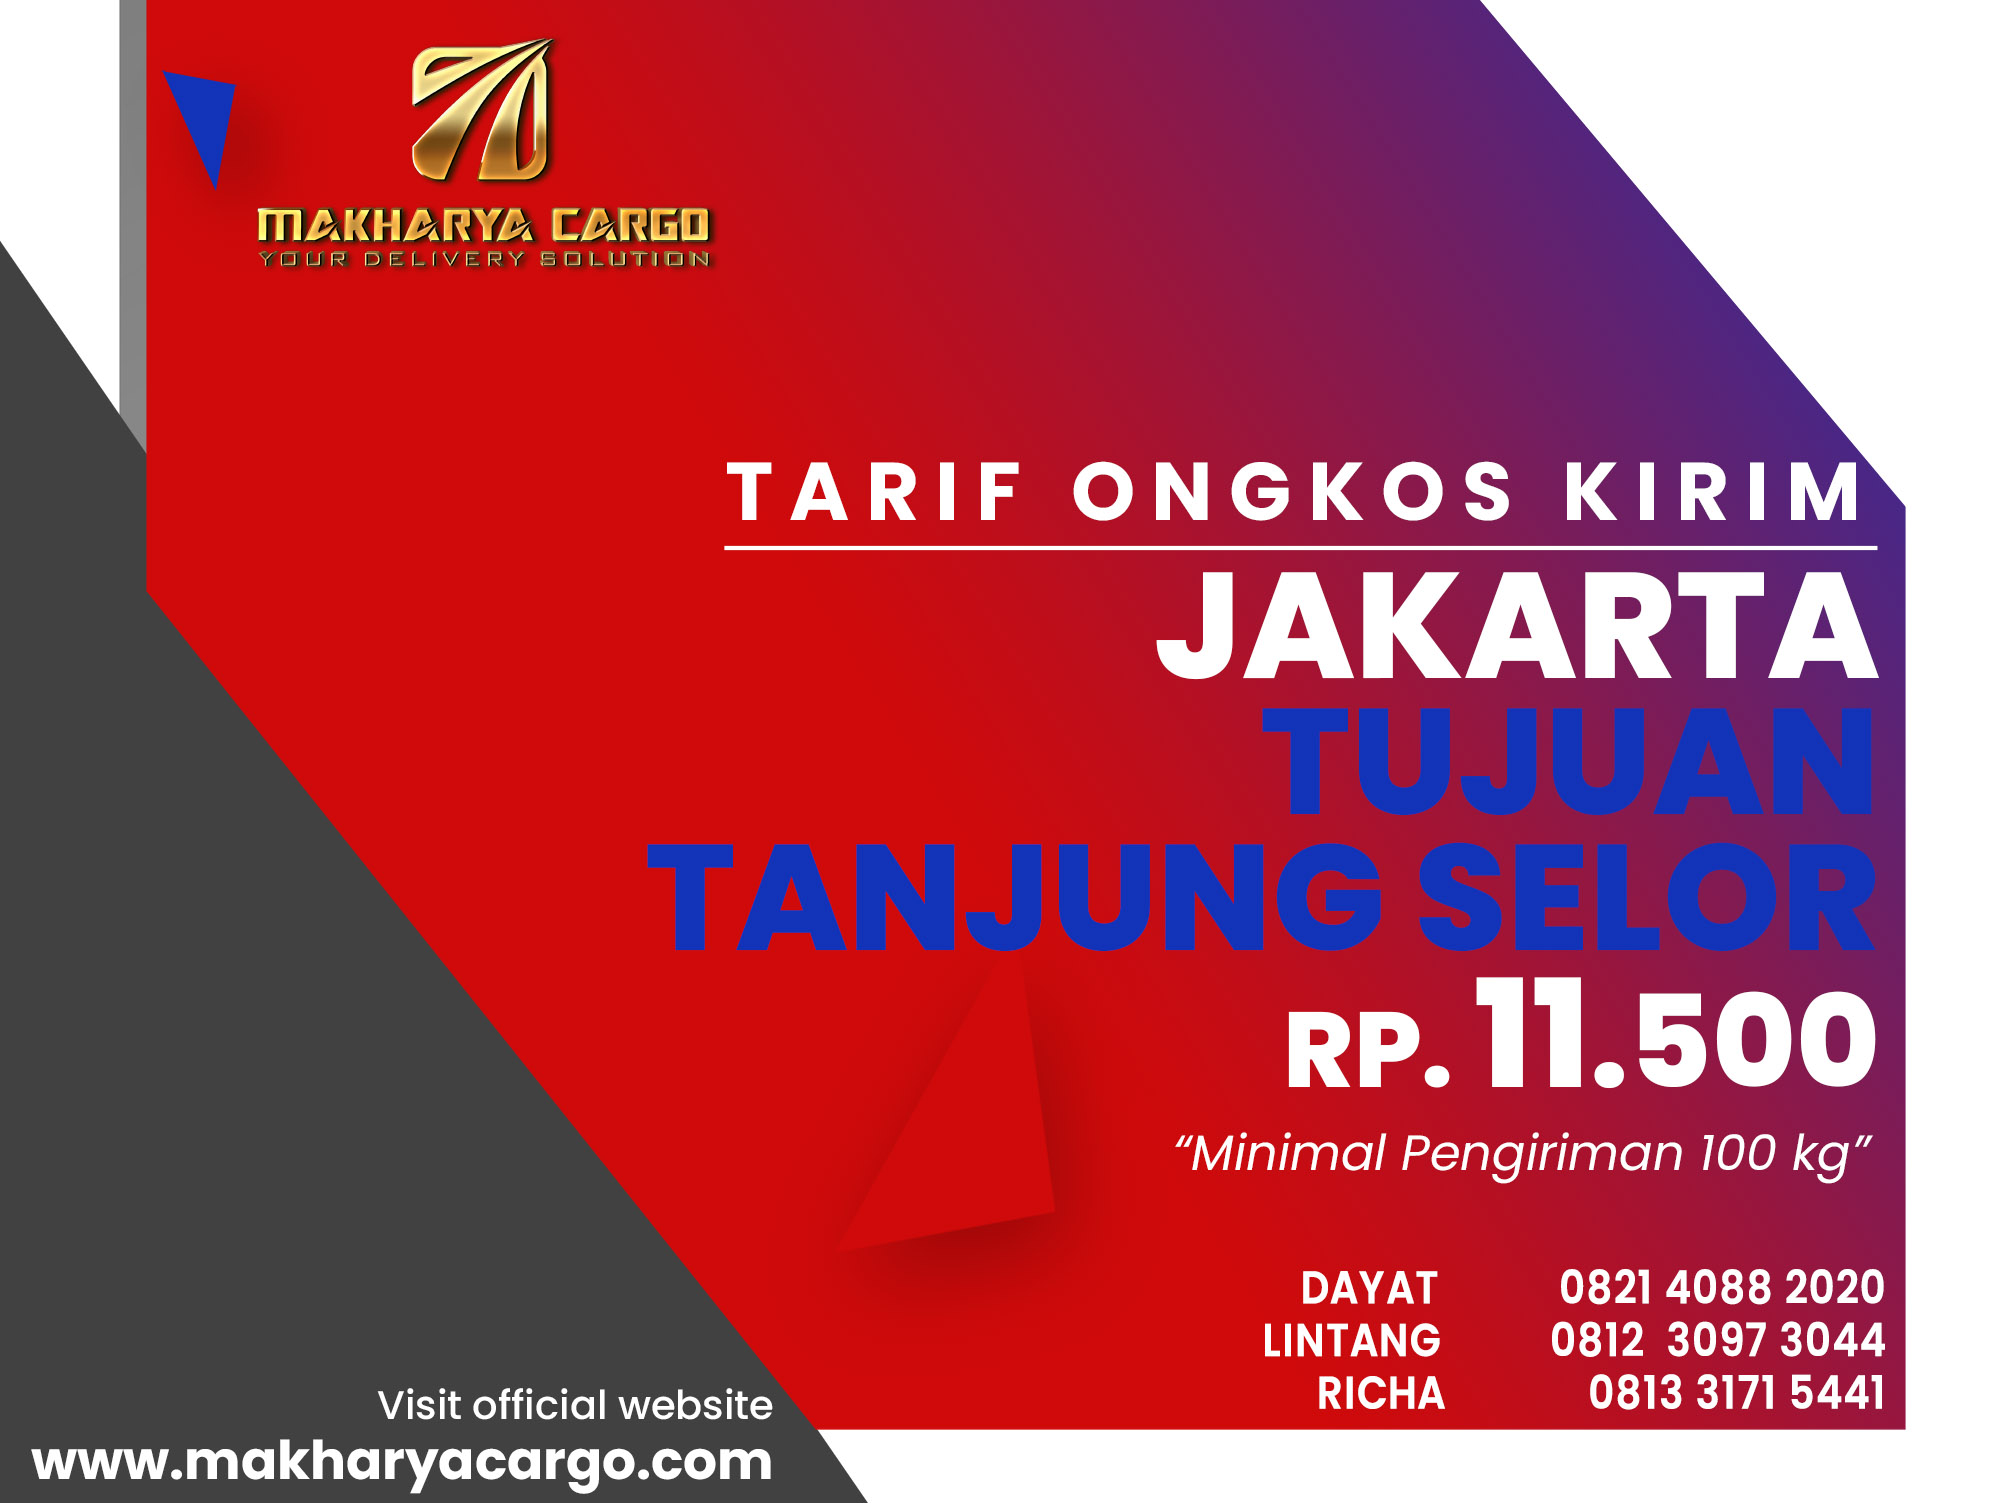 Tarif Ongkos Kirim Jakarta Tanjung Selor